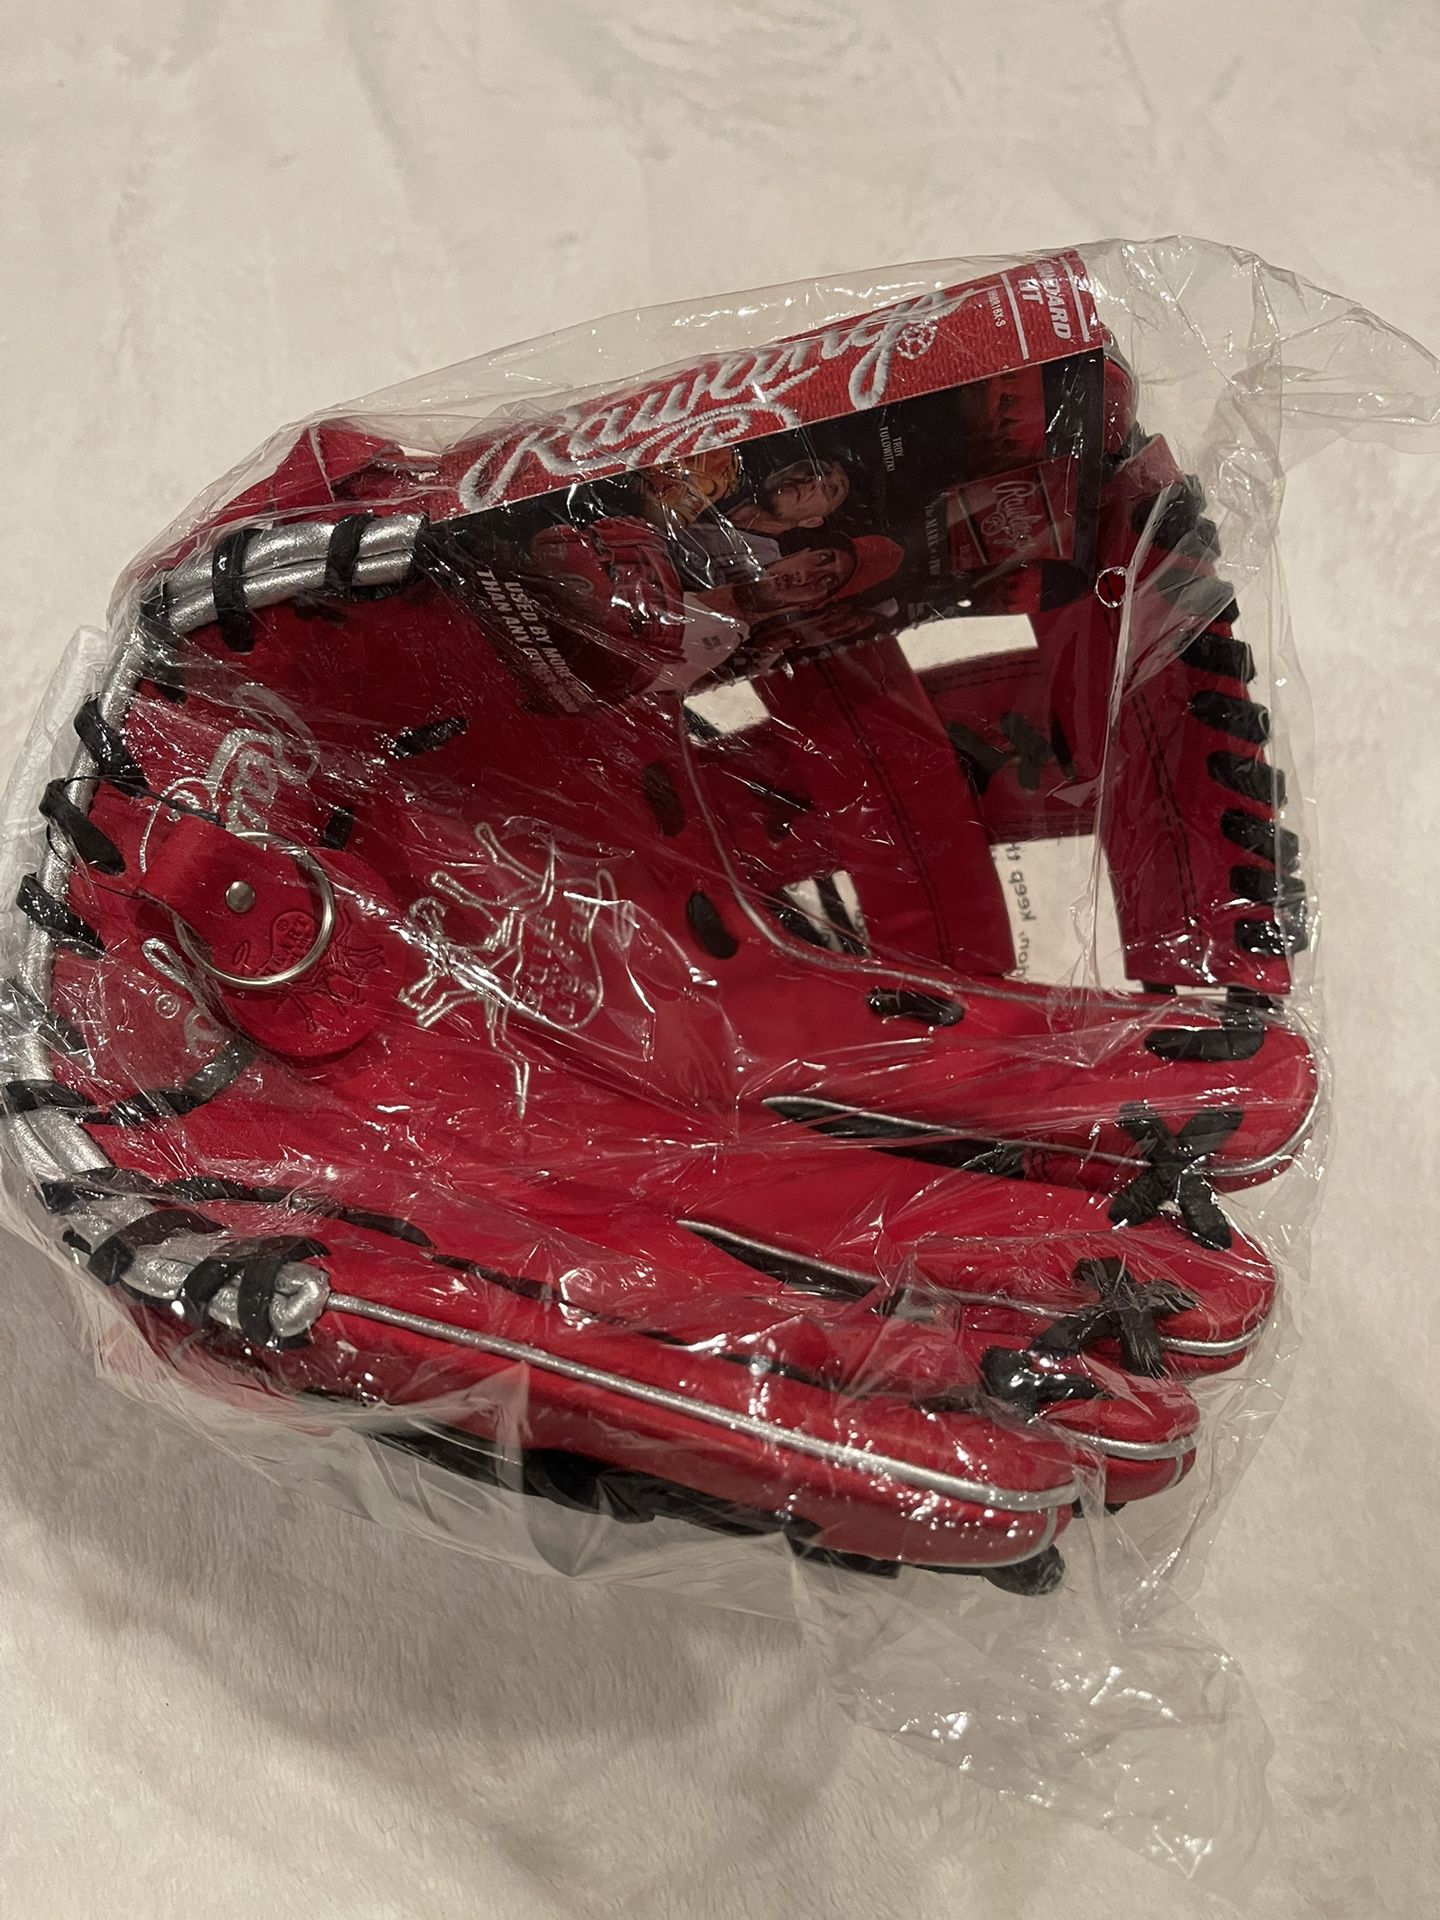 Rawling Heart Of The Hide Baseball Glove